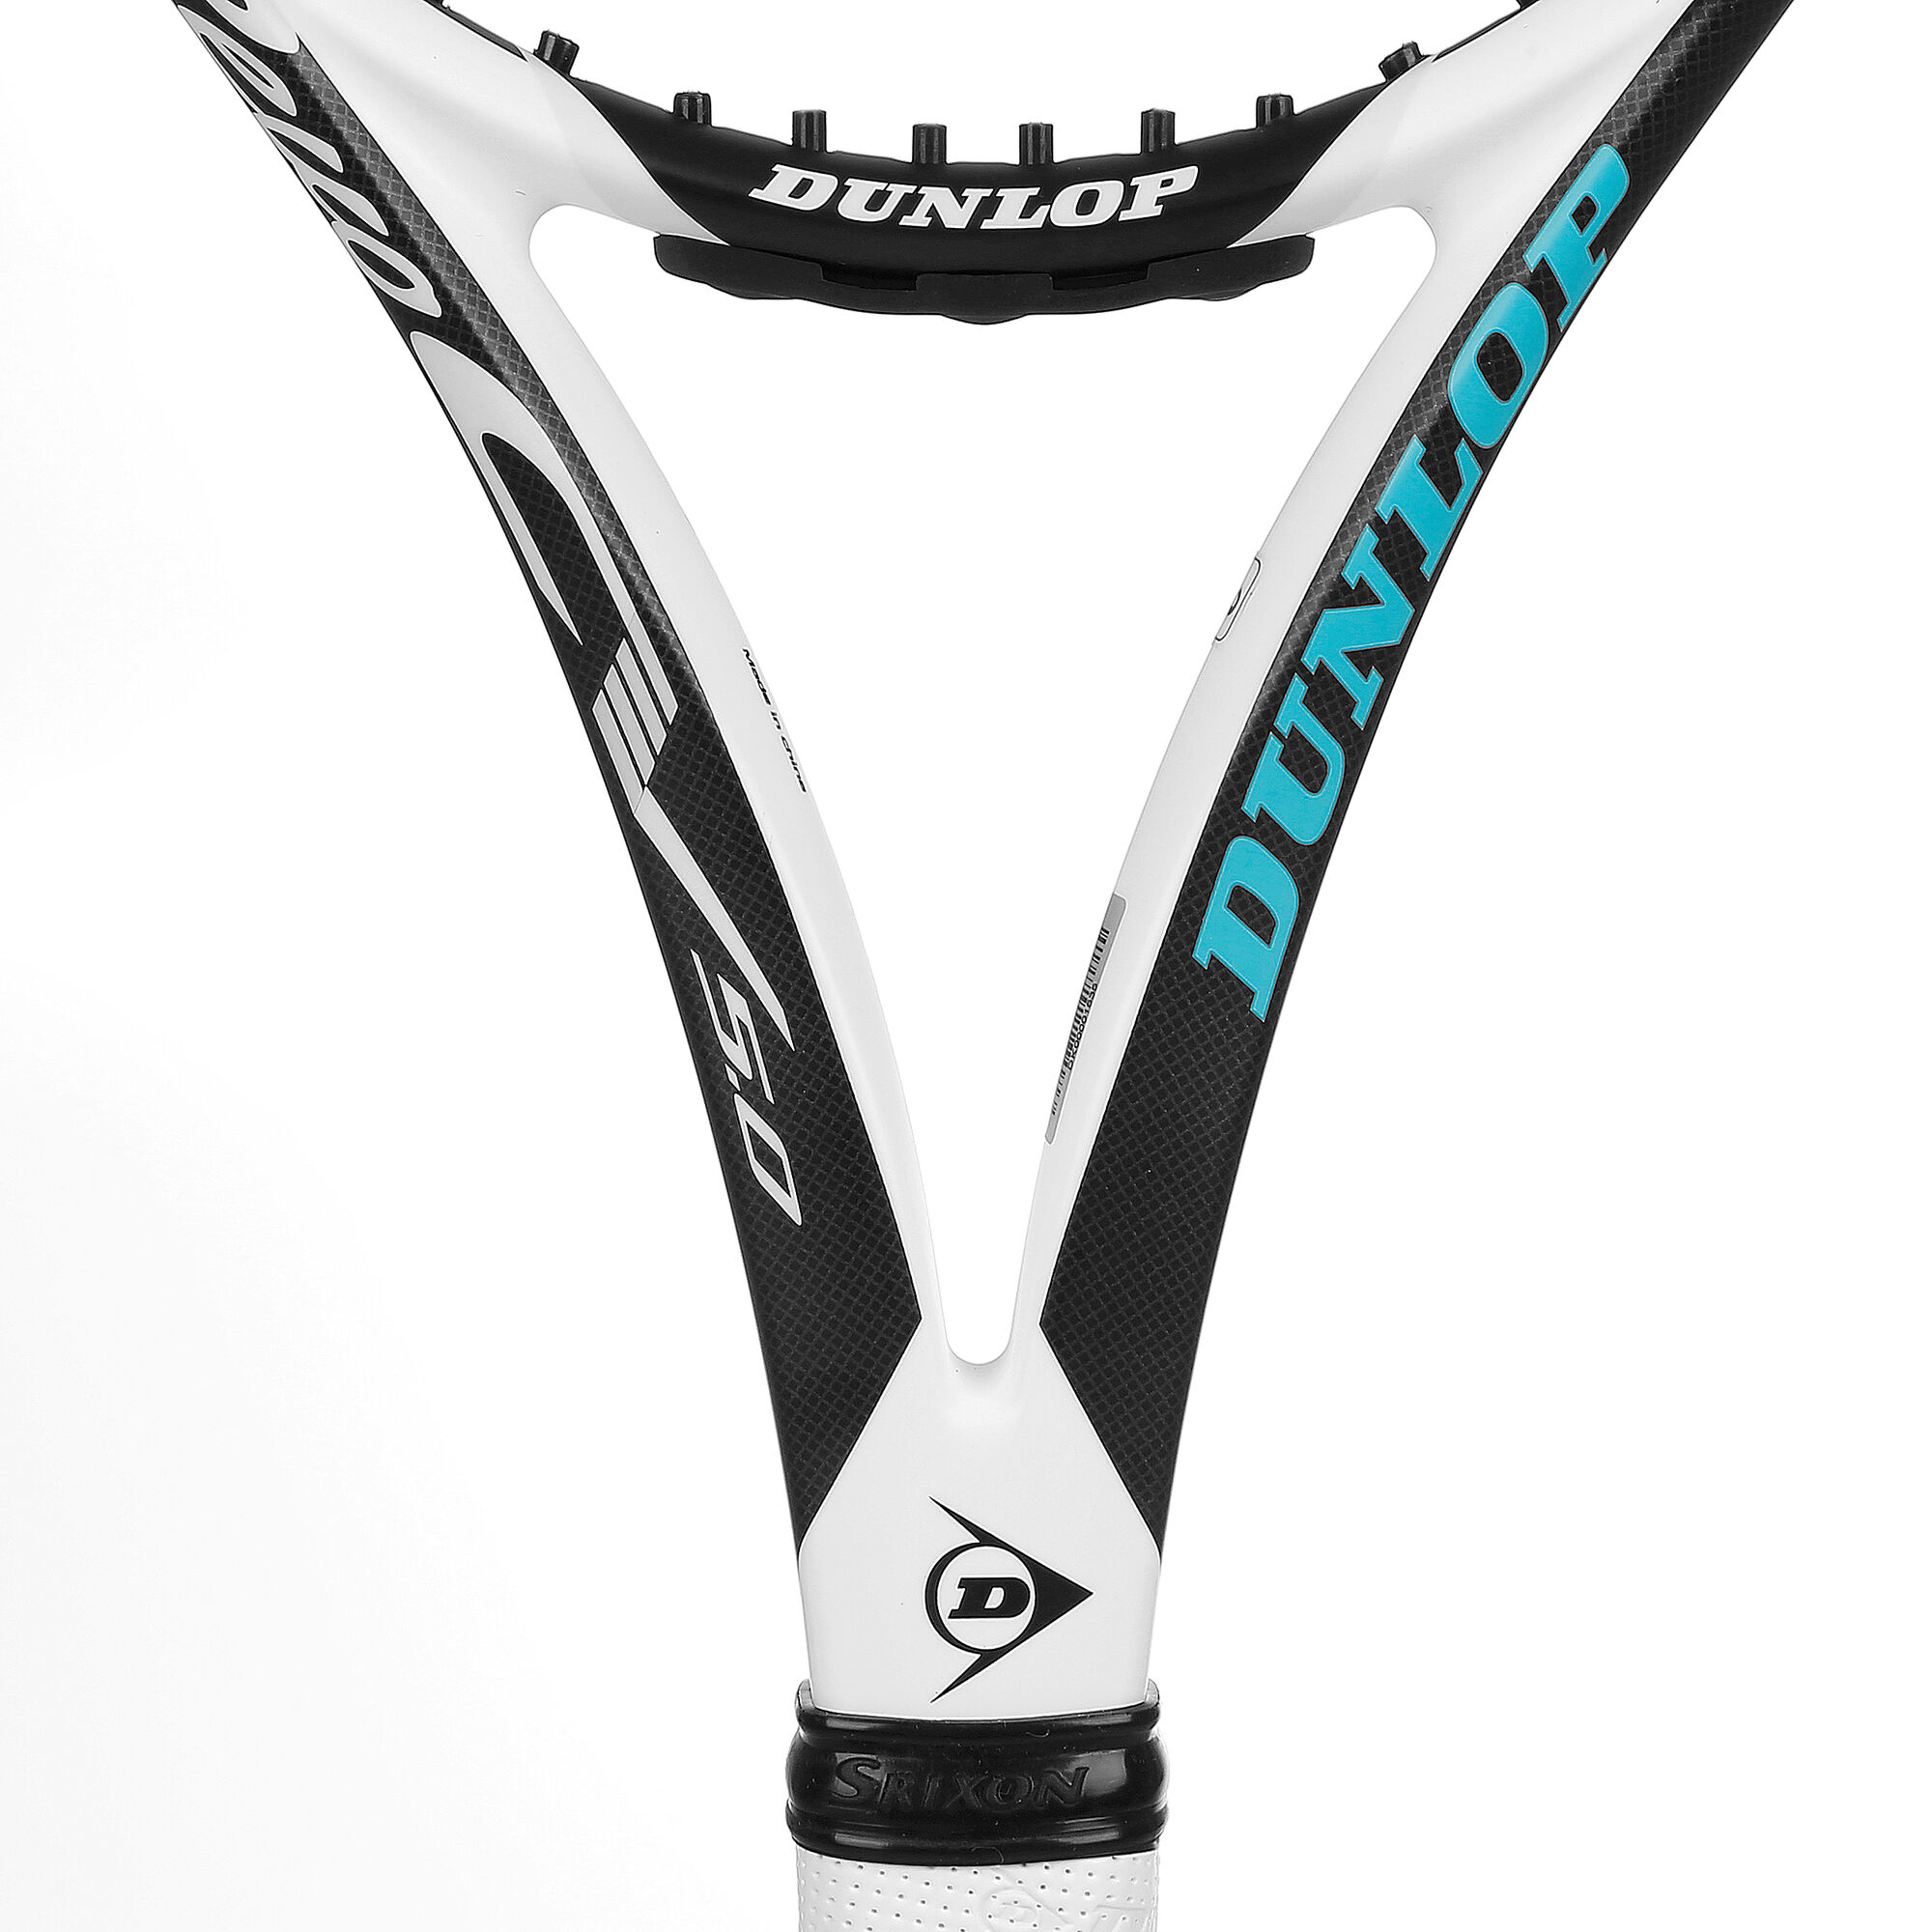 Dunlop Srixon CV 5.0 online | Tennis-Point